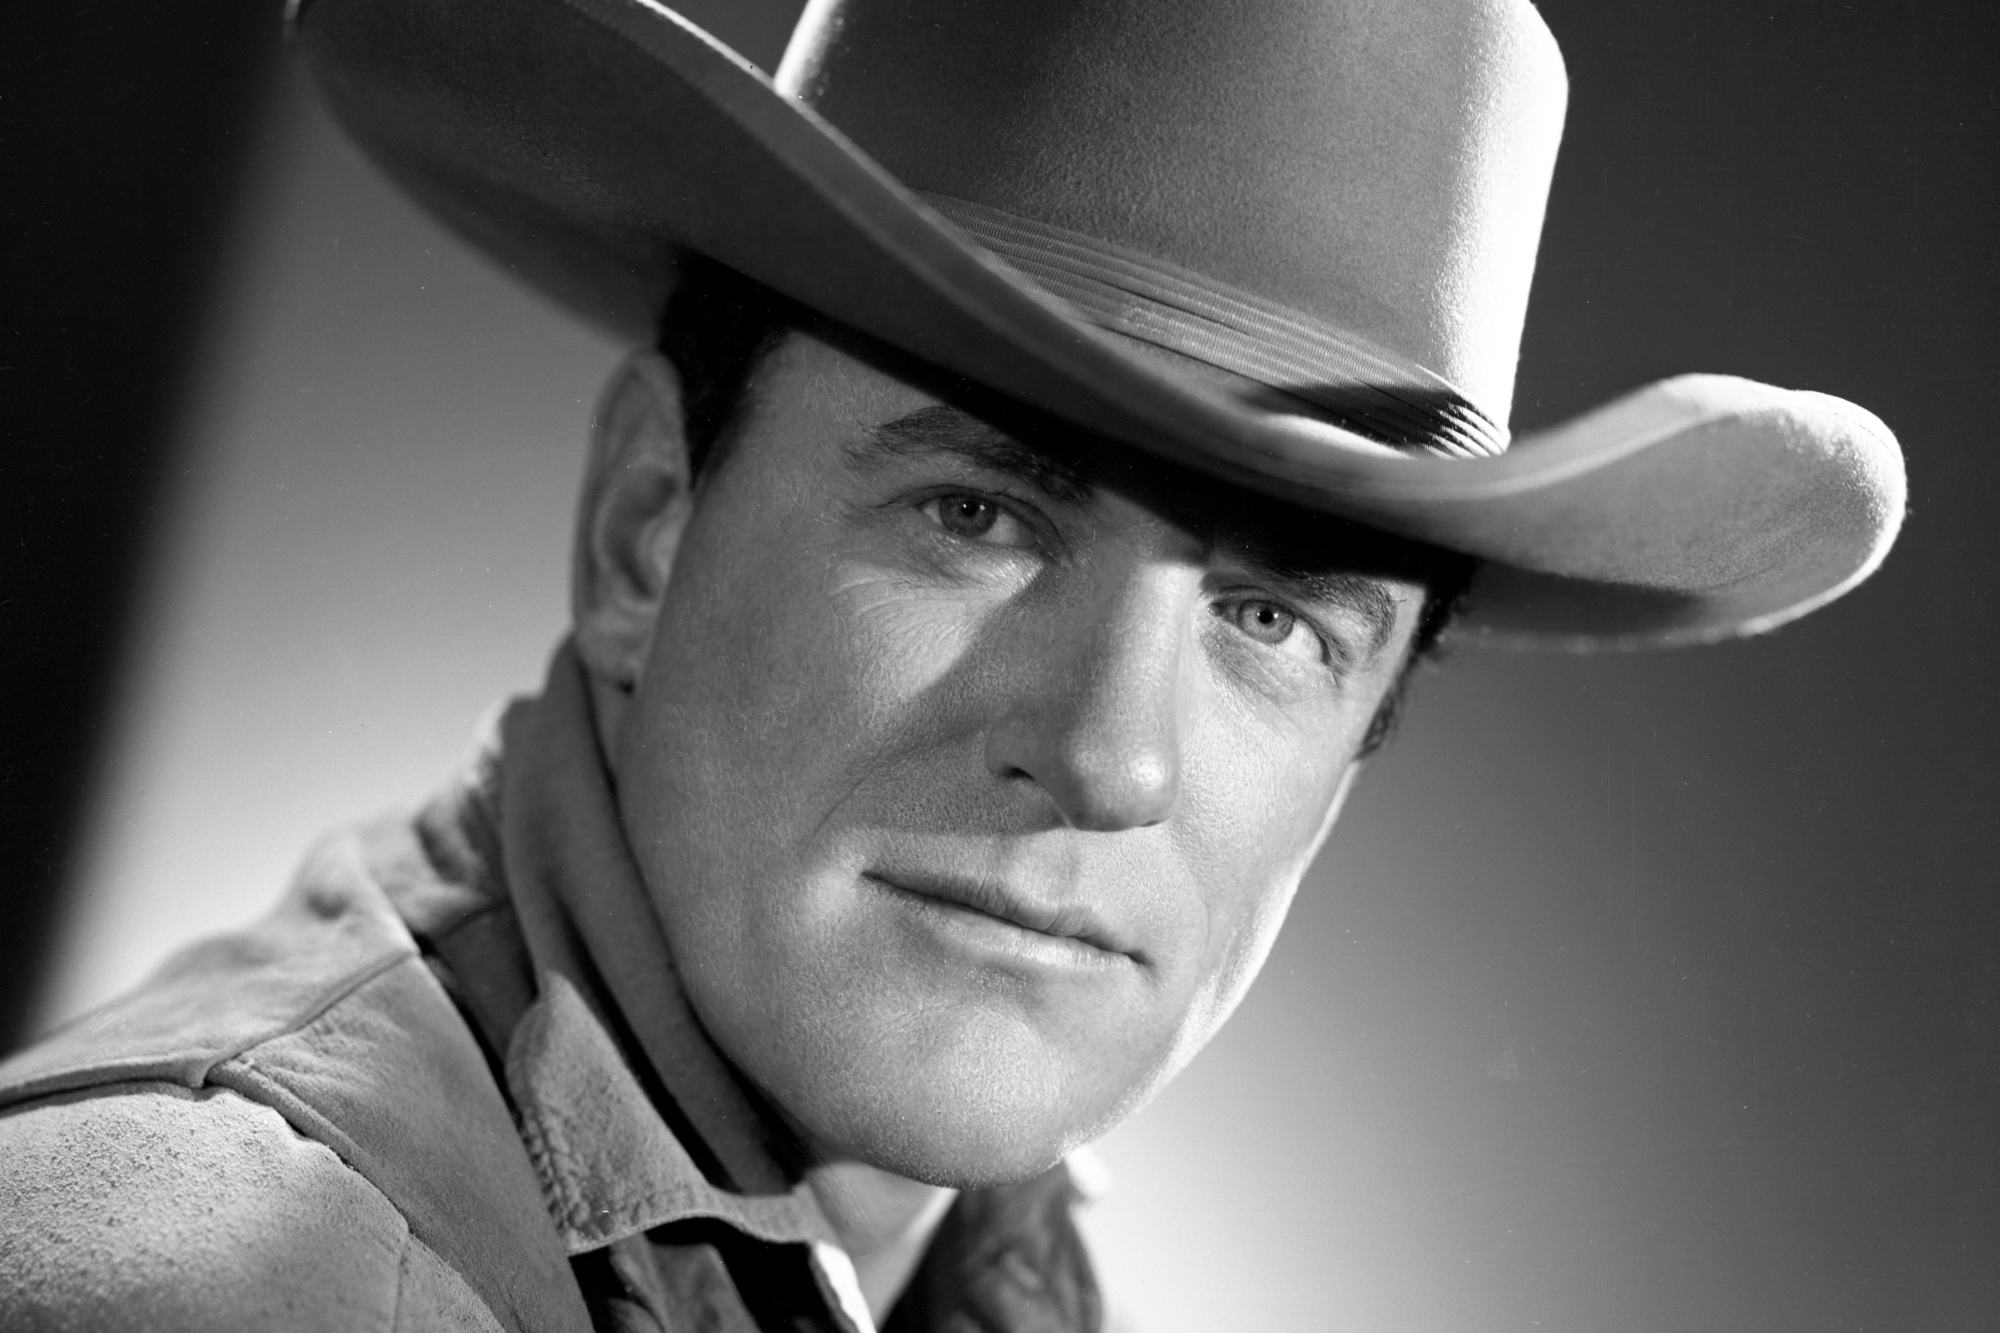 'Gunsmoke' James Arness as Matt Dillon in a black-and-white portrait photo wearing a cowboy hat.